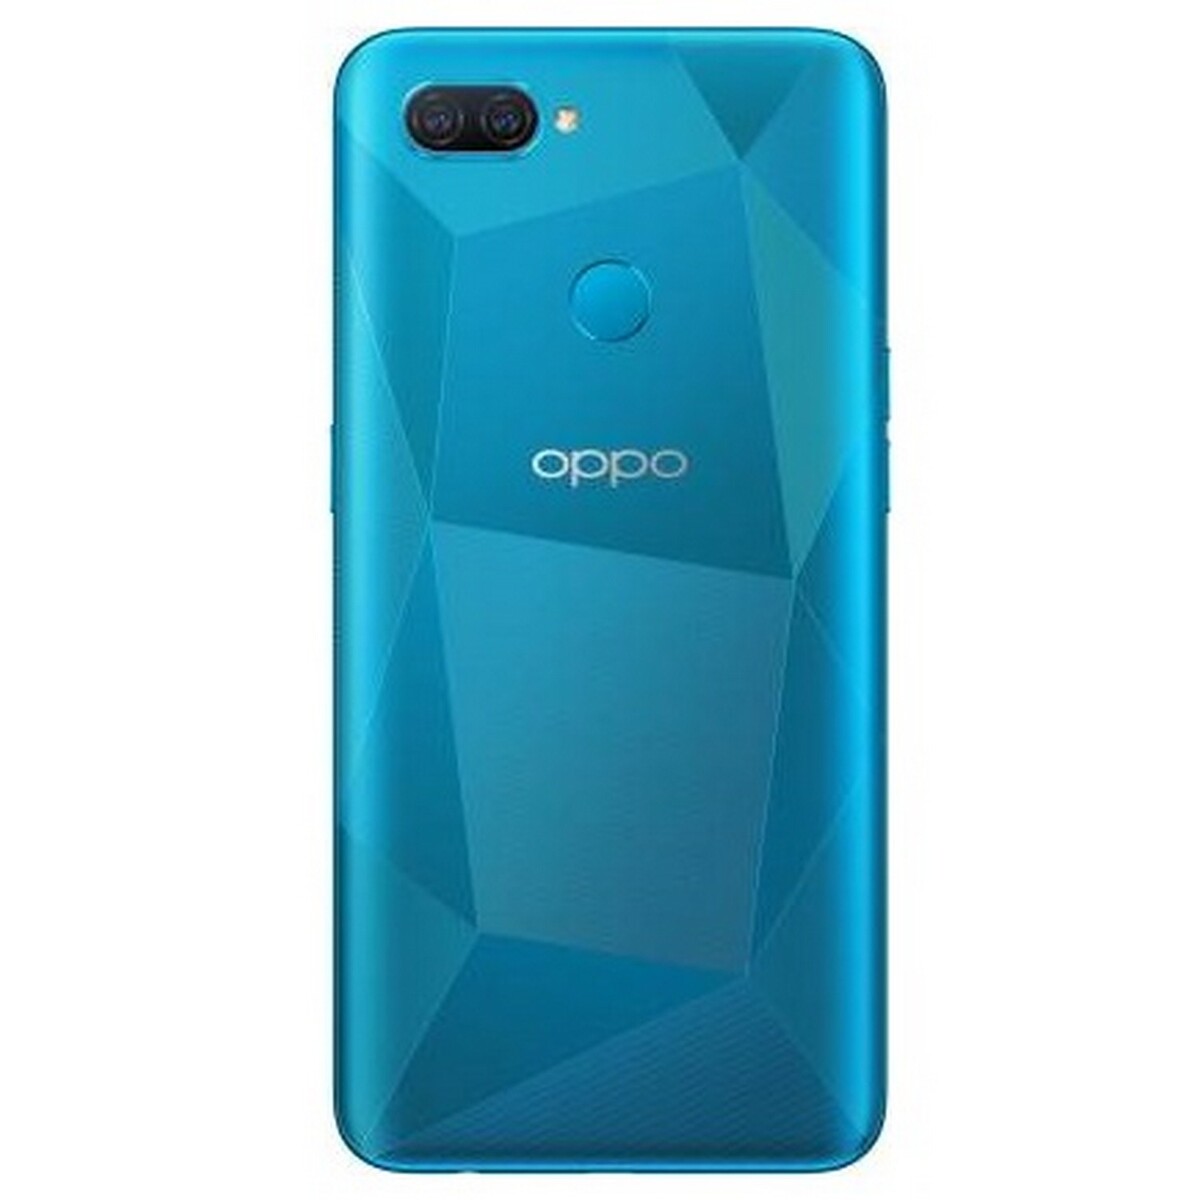 Oppp A12 3GB/32GB Blue